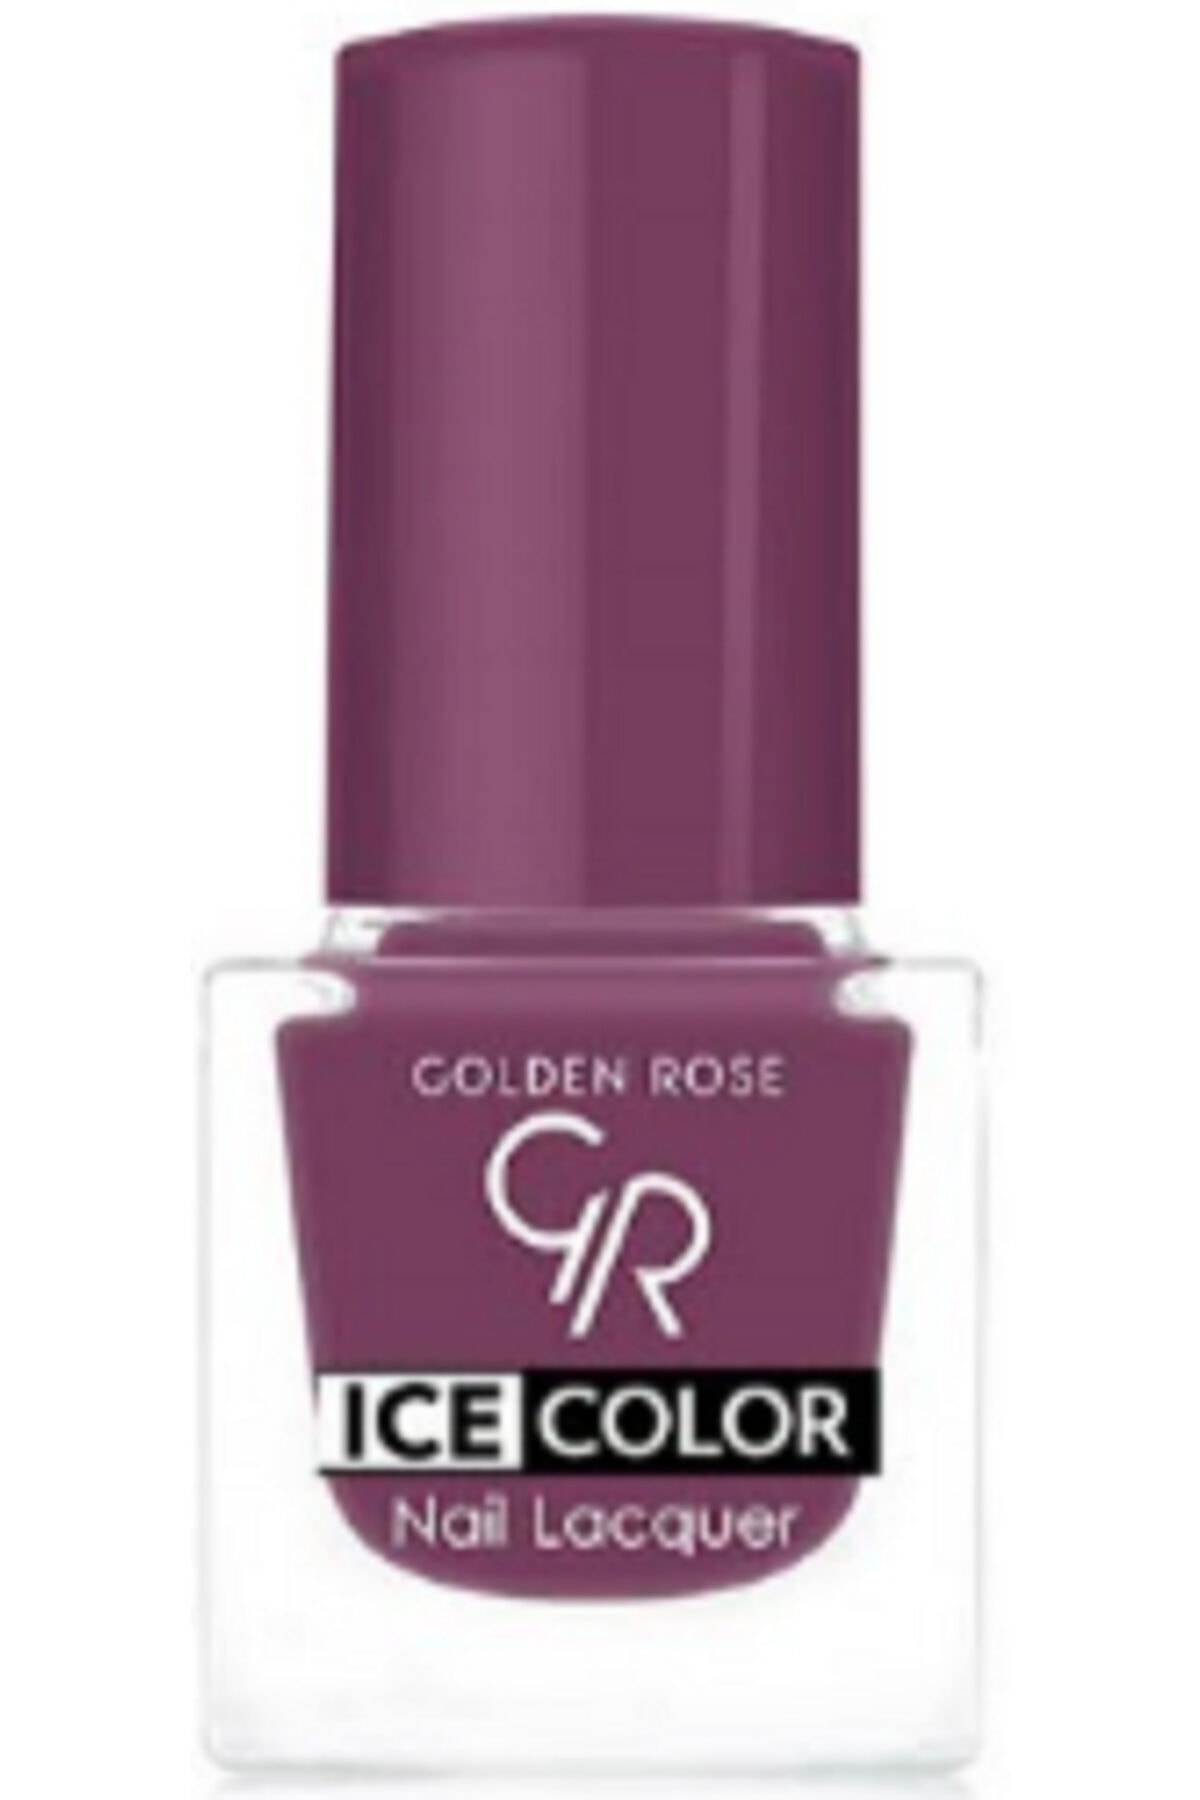 لاک ناخن یخی آیس چیک ICE شماره 189 رنگ سبز گلدن رز Golden Rose